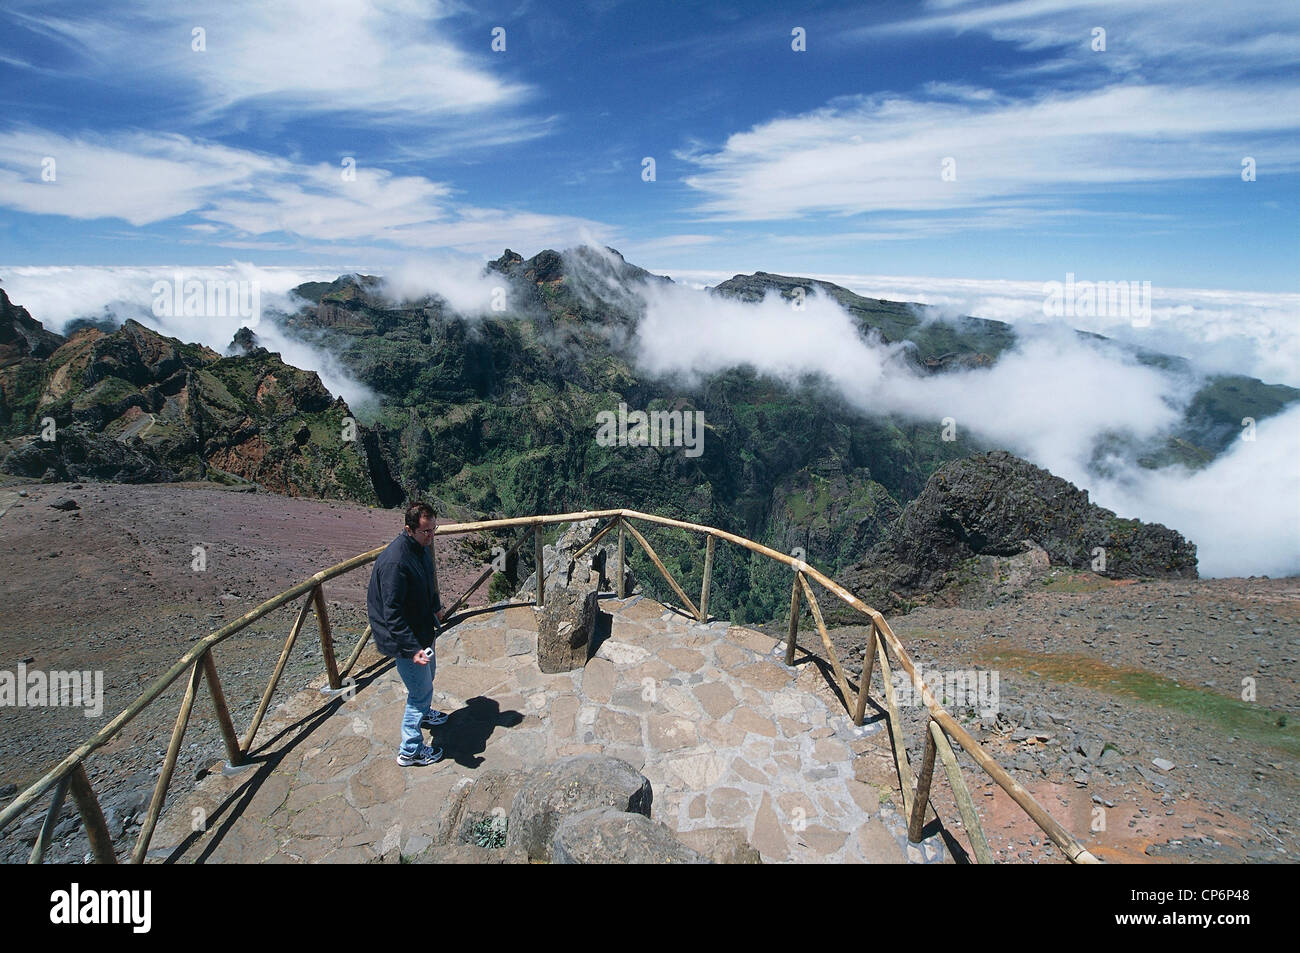 Portugal - Archipelago of Madeira - Madeira Island - View from Pico do Areeiro (1,818 m) Stock Photo